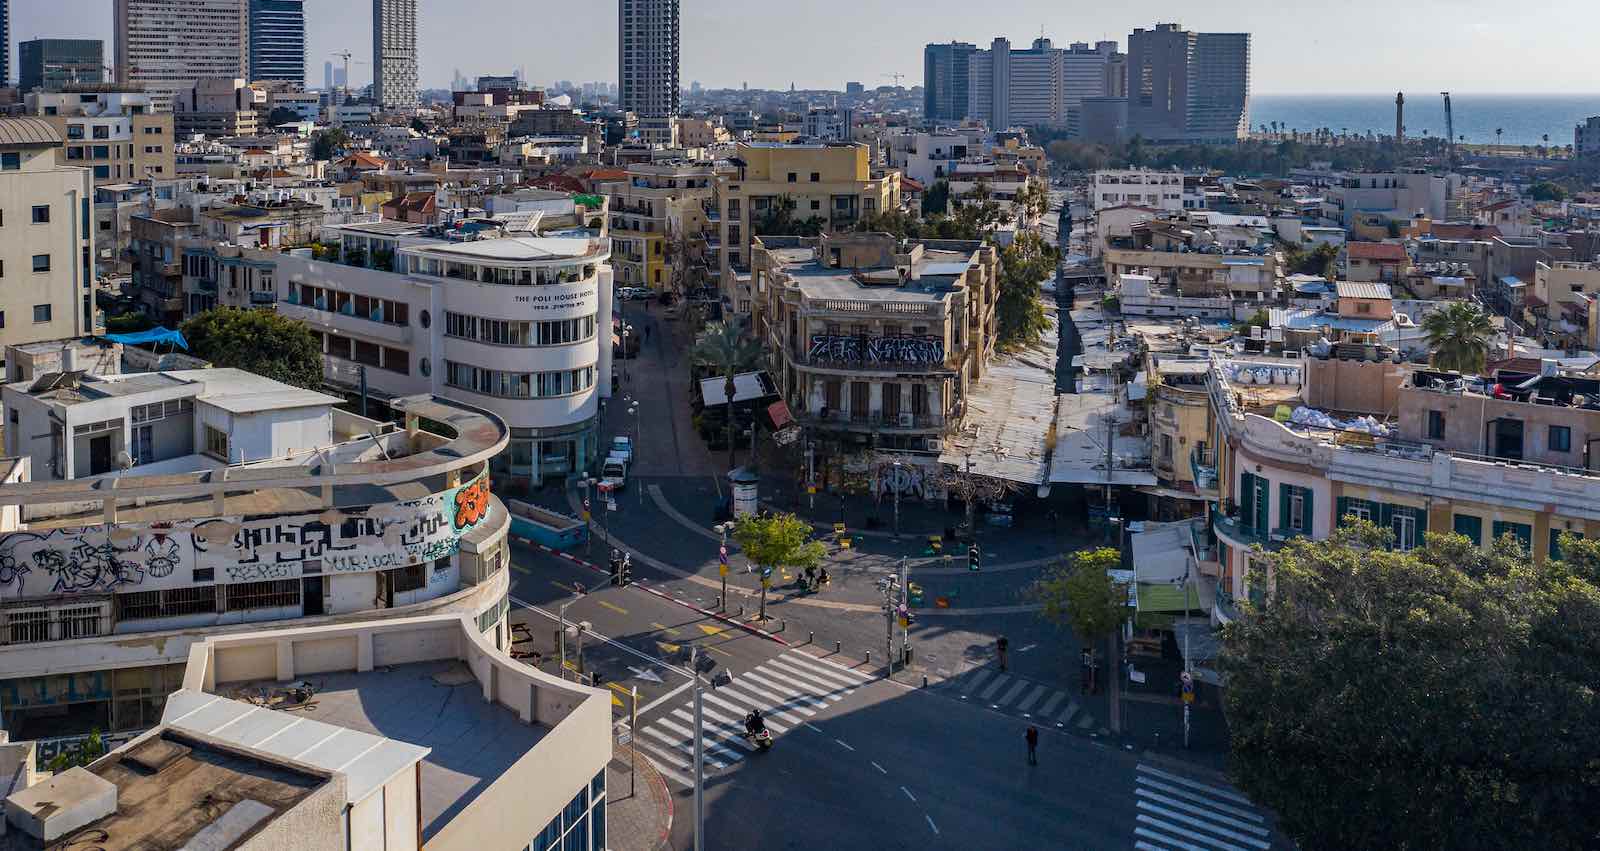 שוק הכרמל, מבט מלמעלה. צילום: ברק ברינקר, באדיבות עיריית תל אביב-יפו